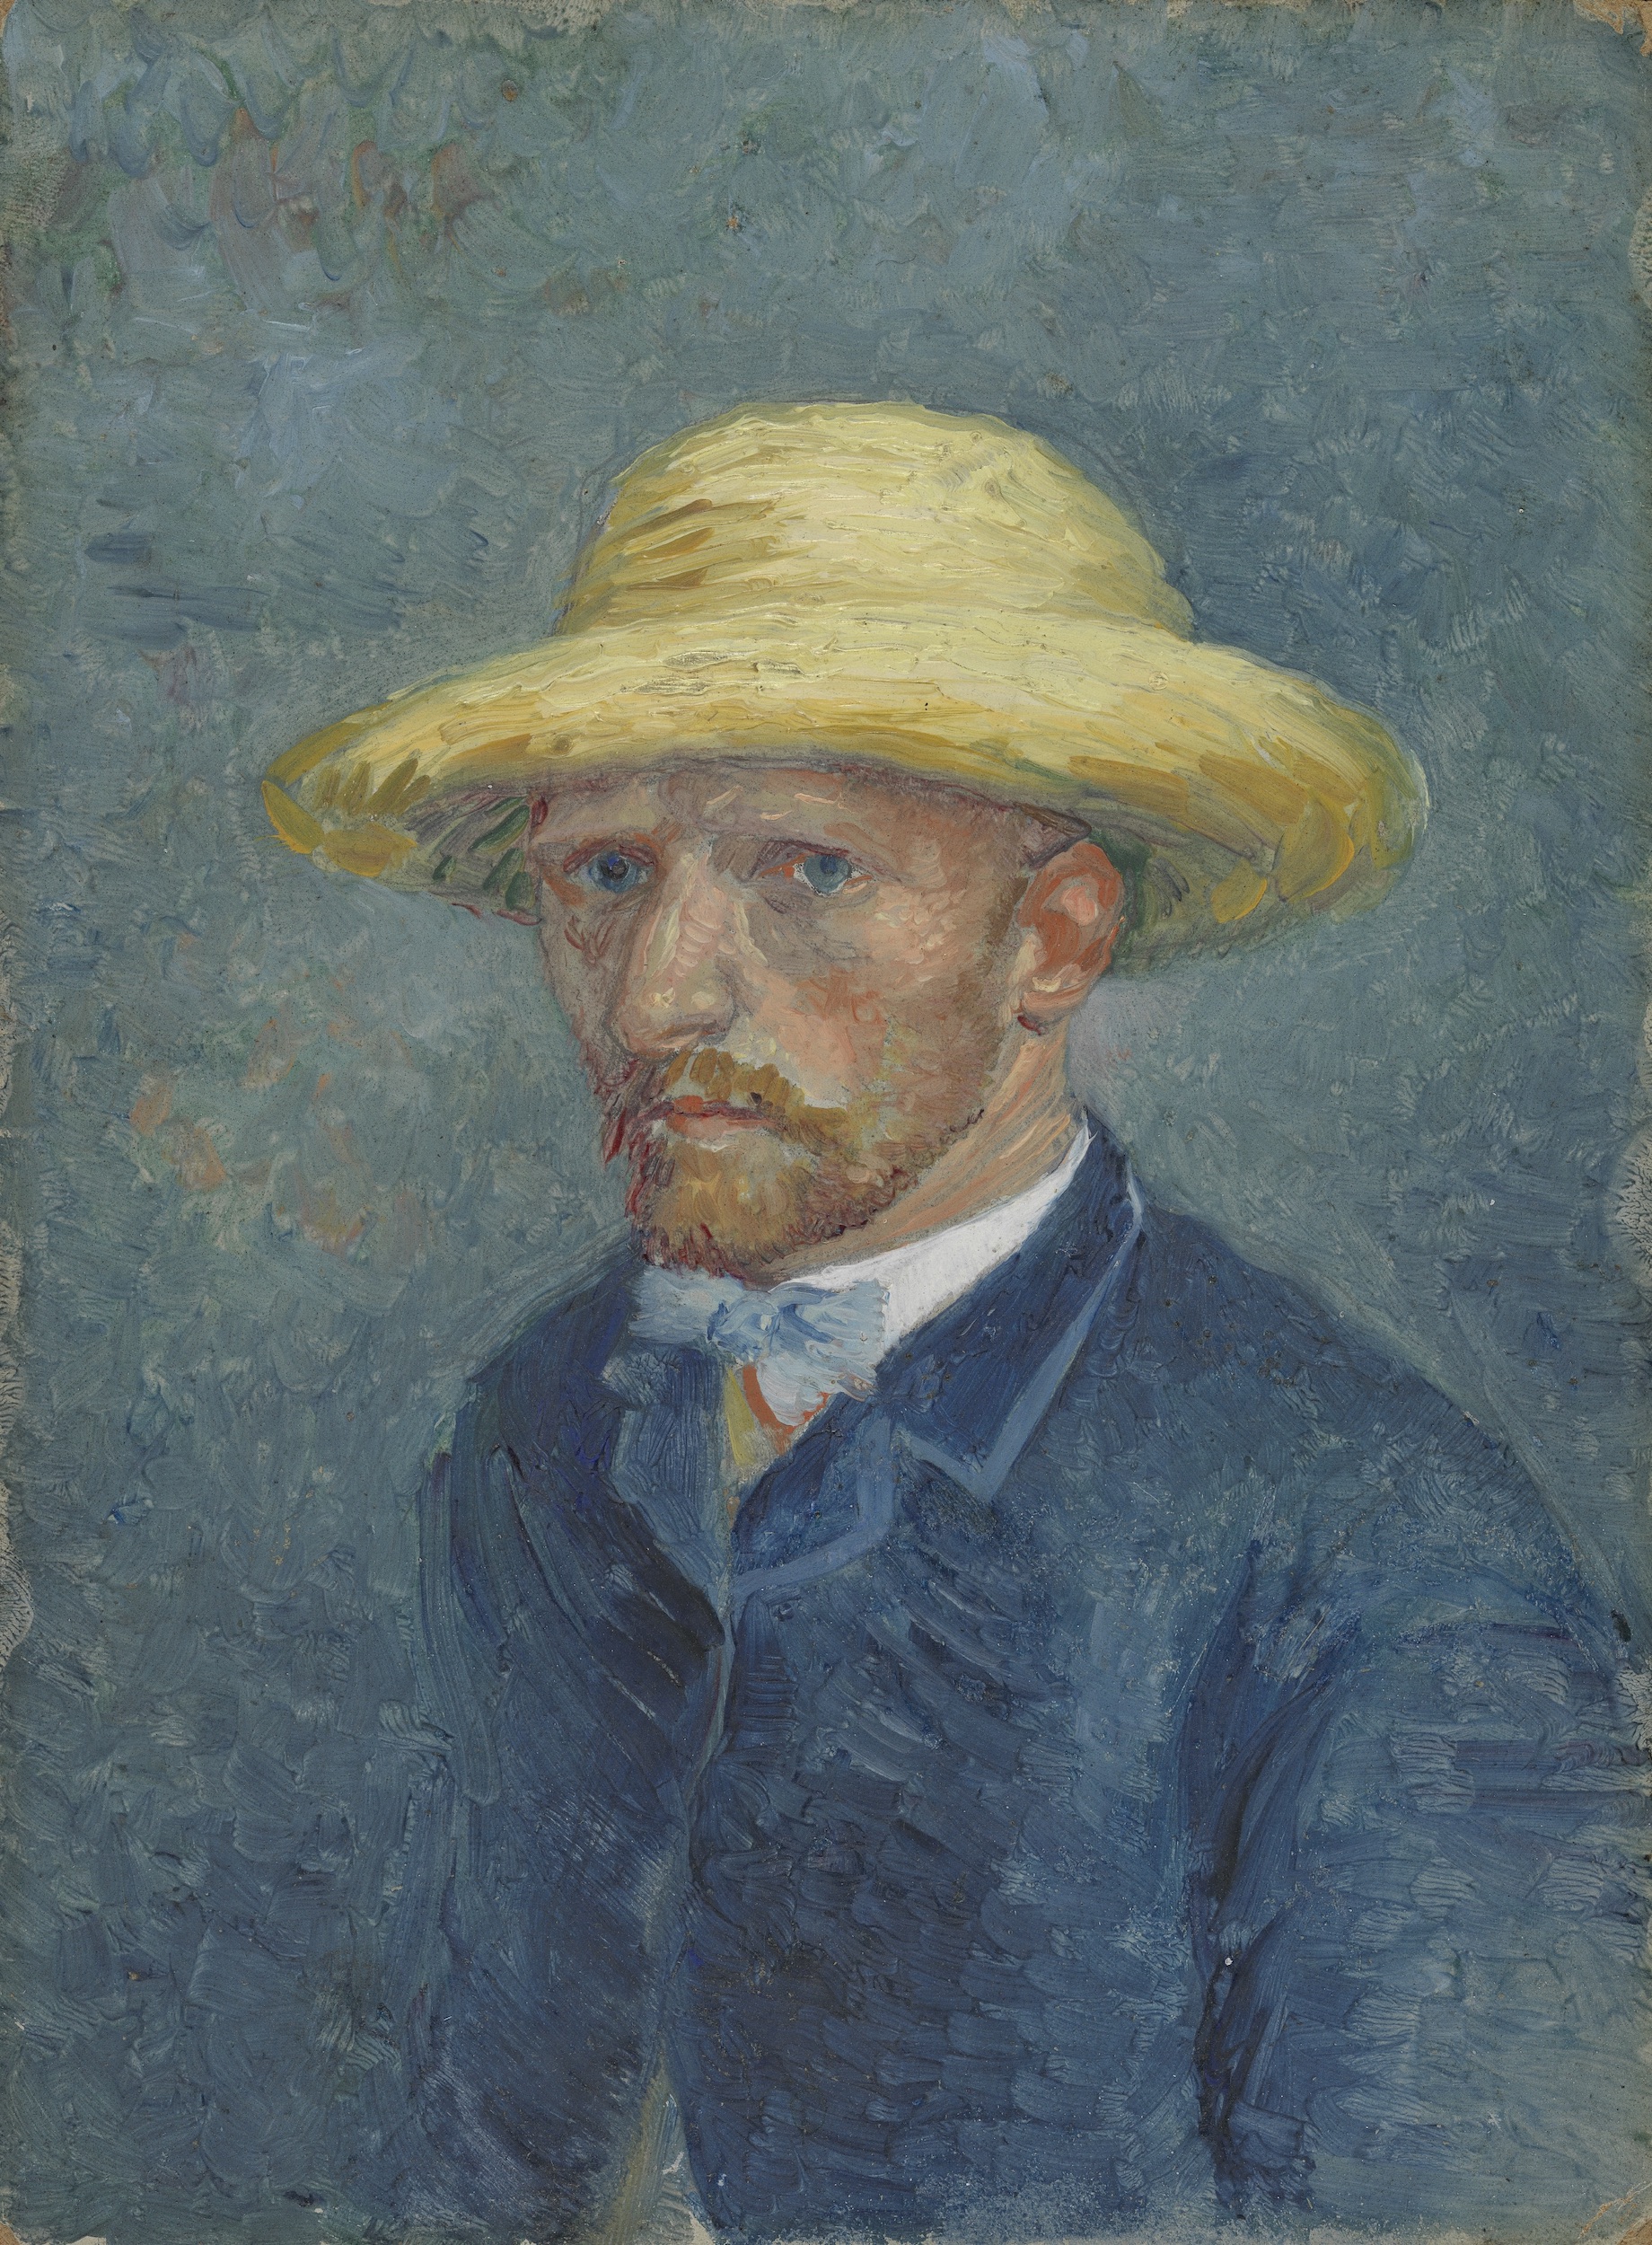 Autoportrét nebo Portrét Thea van Gogha by Vincent van Gogh - léto 1887 - 19 cm x 14,1 cm 